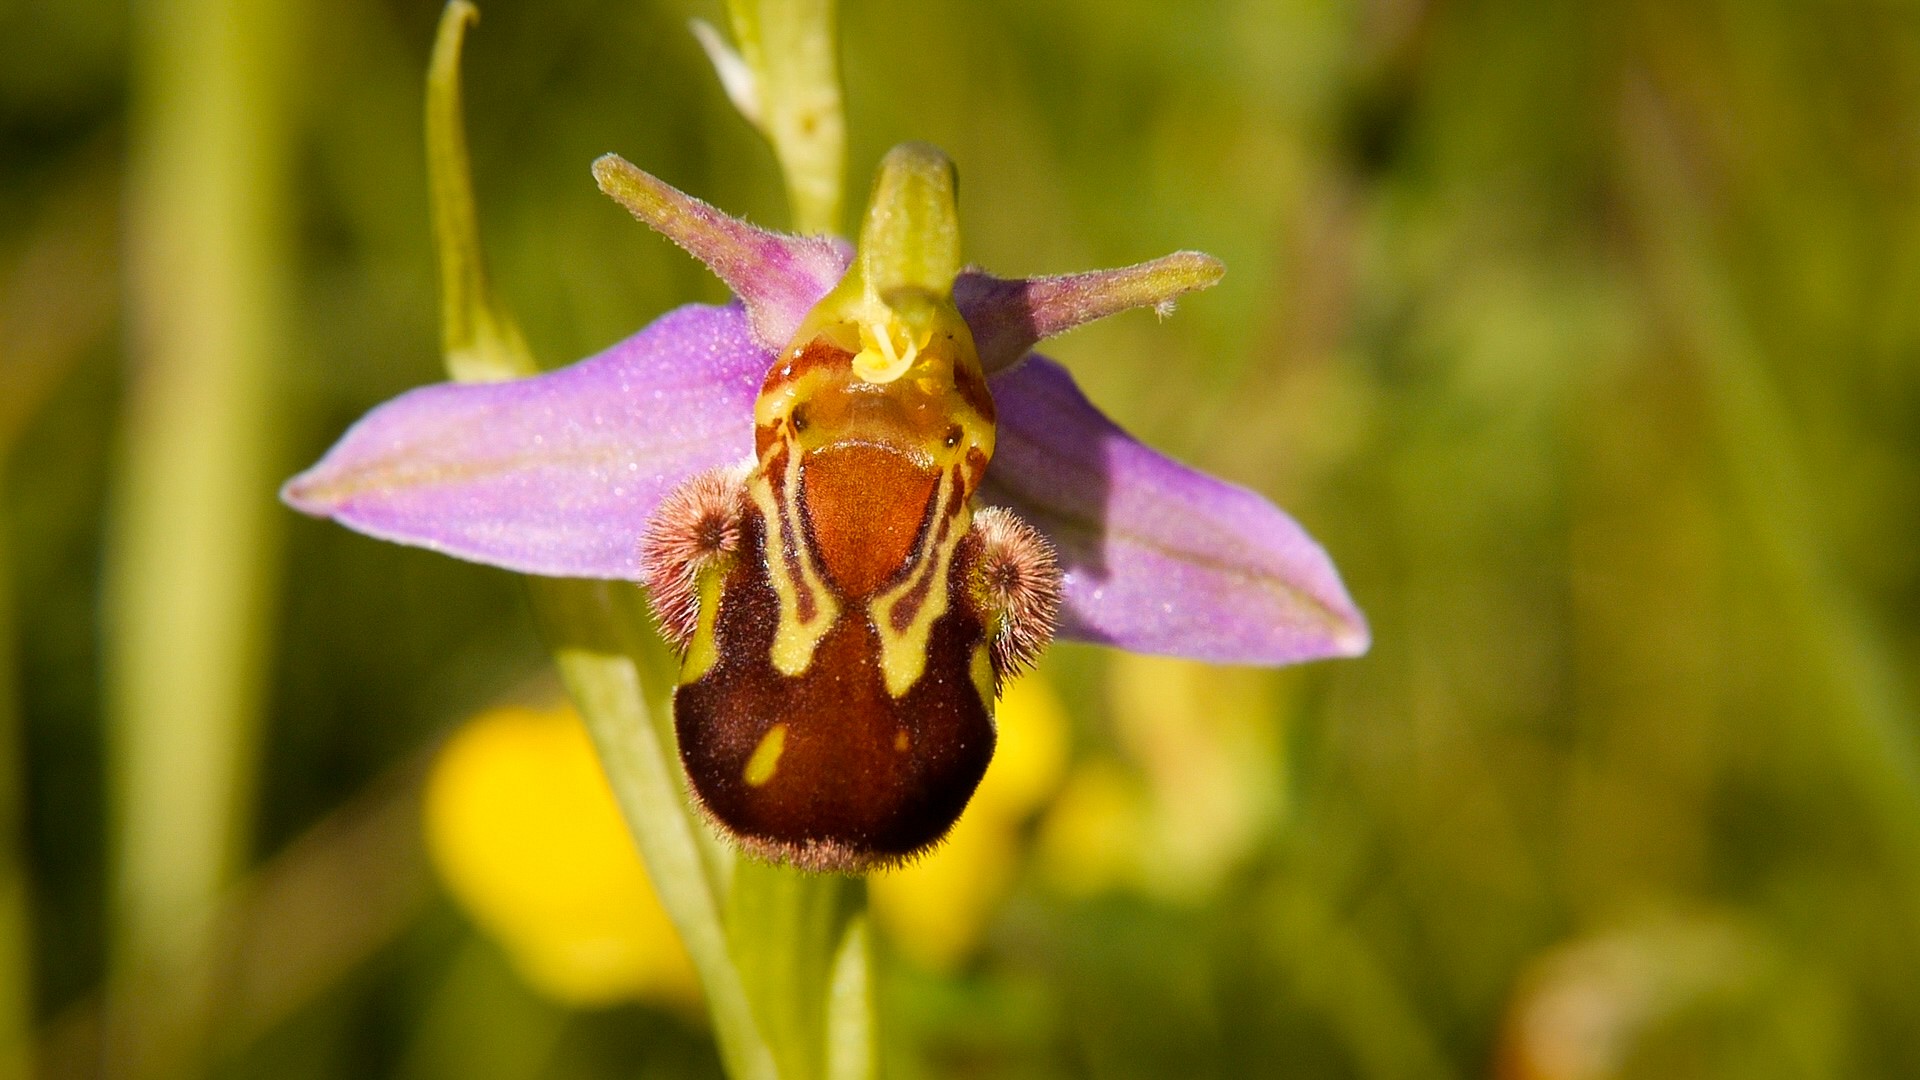 pObwohl-sie-Bienen-Ragwurz-heiszligt-wird-diese-Orchideenart-nur-selten-durch-Insekten-fremdbestaumlubt-Sie-bestaumlubt-sich-in-der-Regel-selbstnbspindem-sie-ihre-Pollinienstiele-kruumlmmt-und-sie-mit-der-Narbe-in-Kontakt-bringt-ndash-einenbspSeltenheit-unter-den-Orchideenp